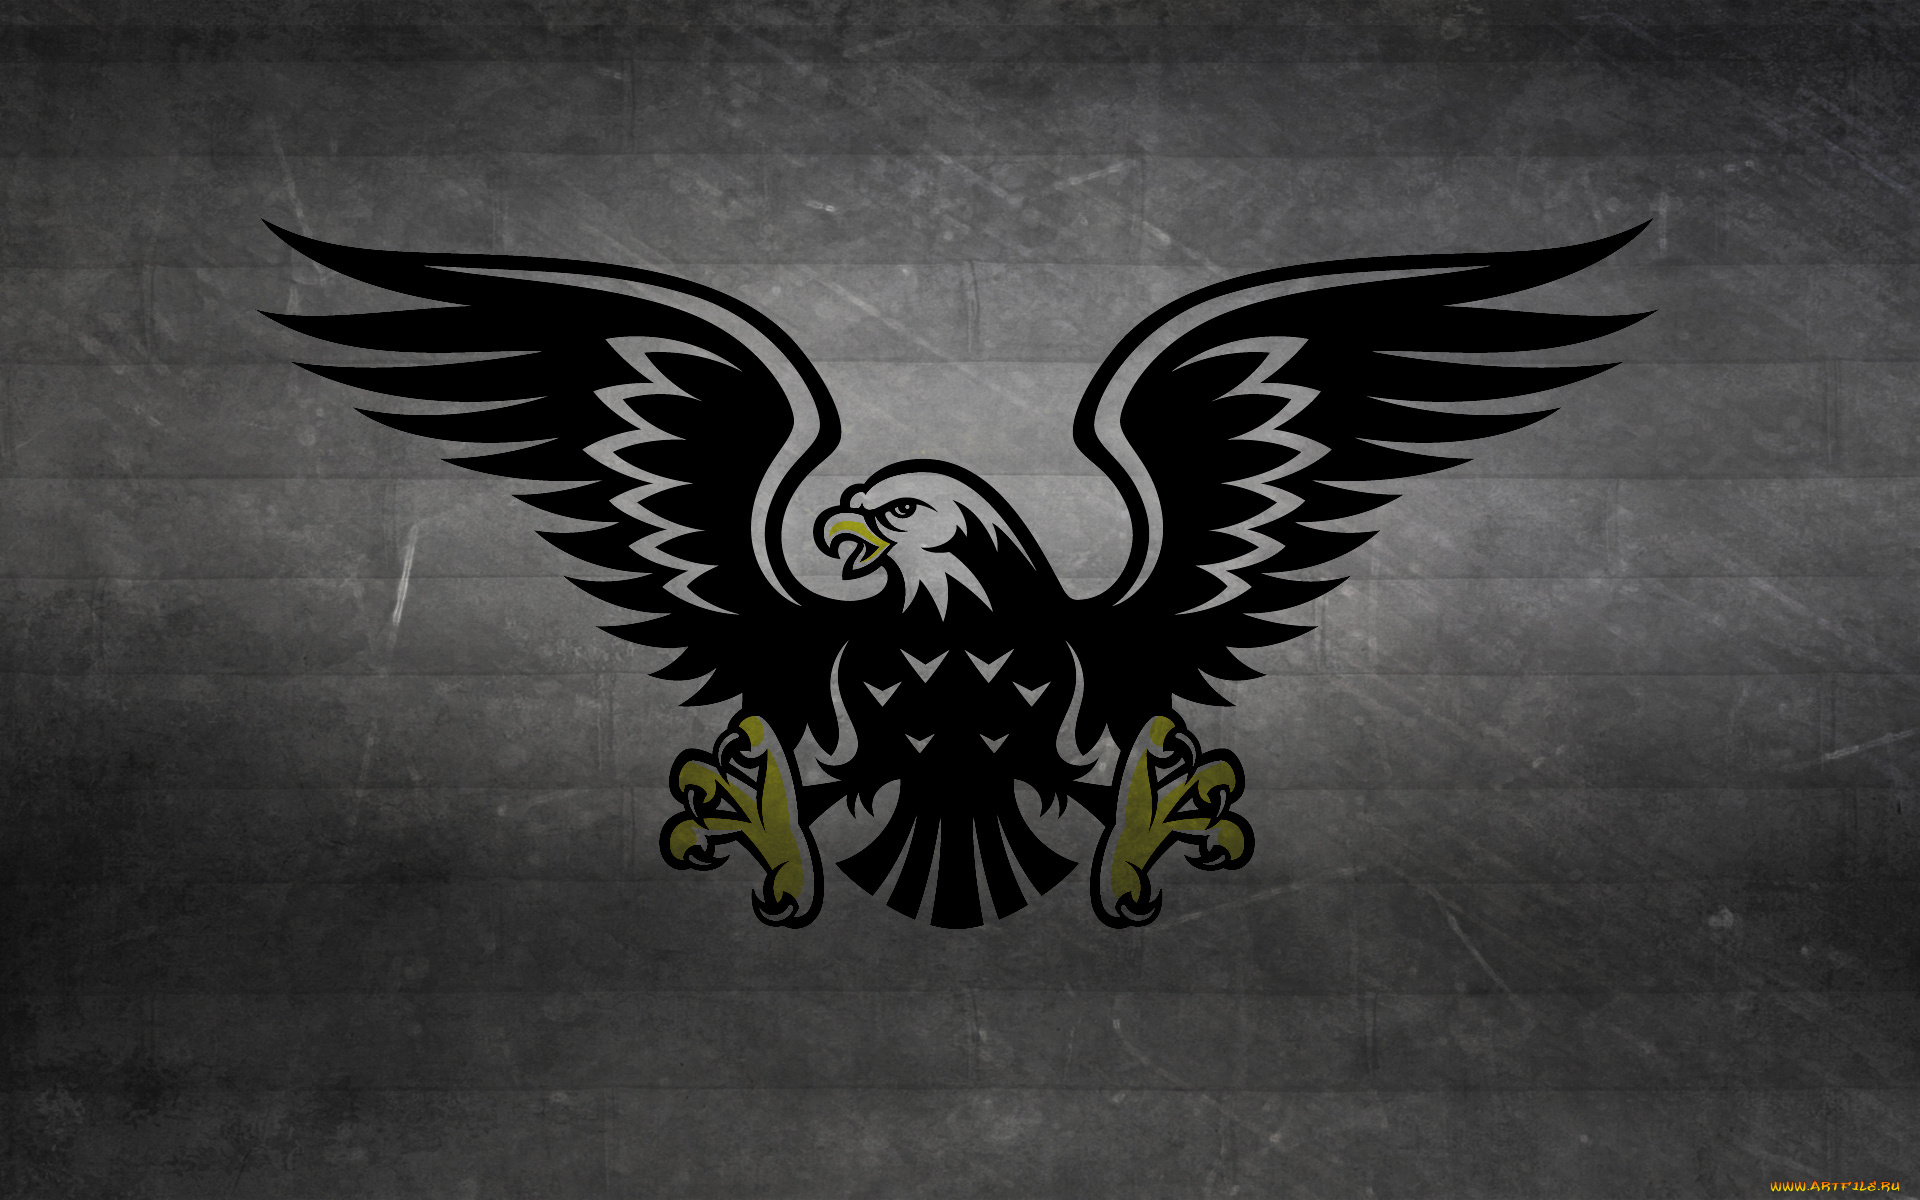 разное, надписи, логотипы, знаки, темный, фон, hawk, eagle, хищник, птица, ястреб, когти, крылья, полосы, черно-белый